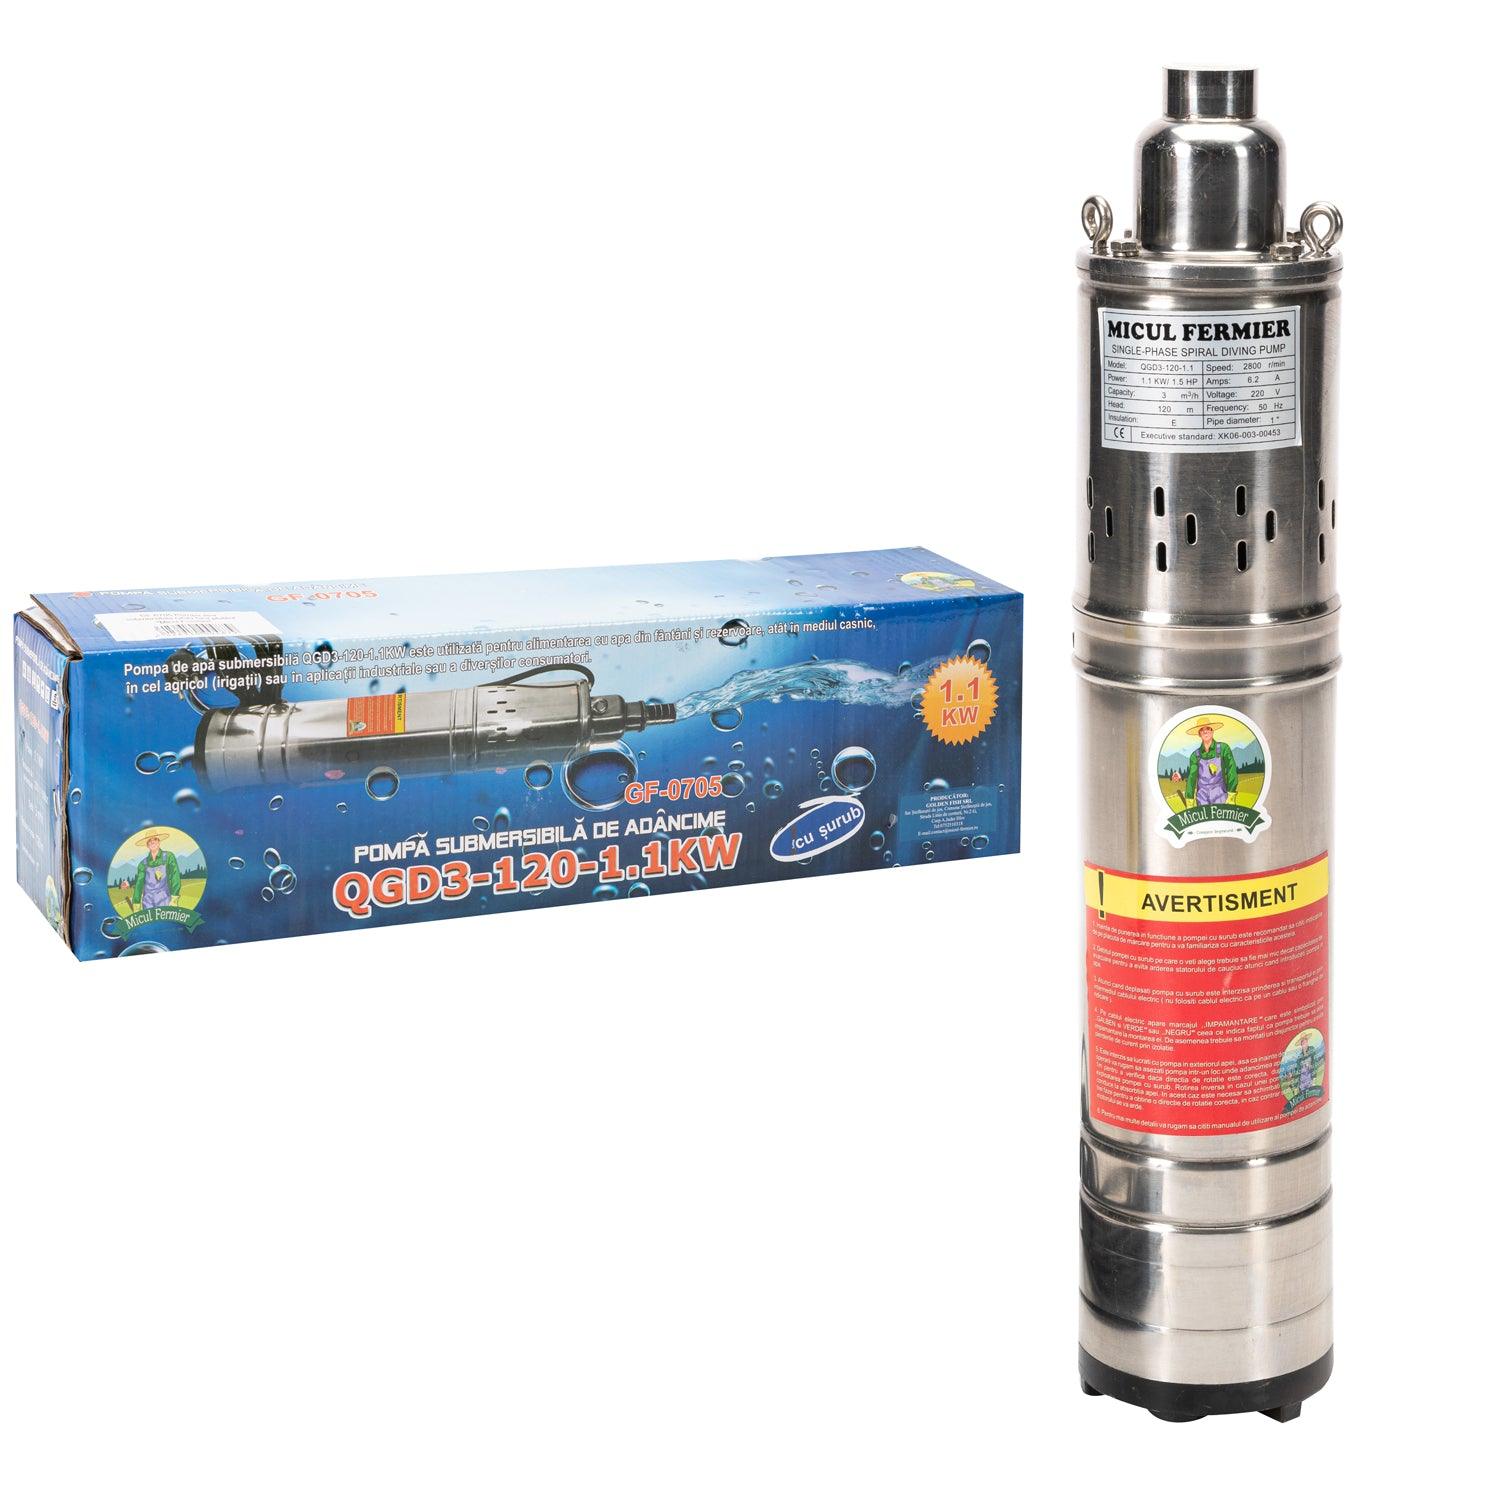 Pompa Submersibila Micul Fermier Qgd3 1100W 120 M - ZEP.RO - Ți-e la îndemână!